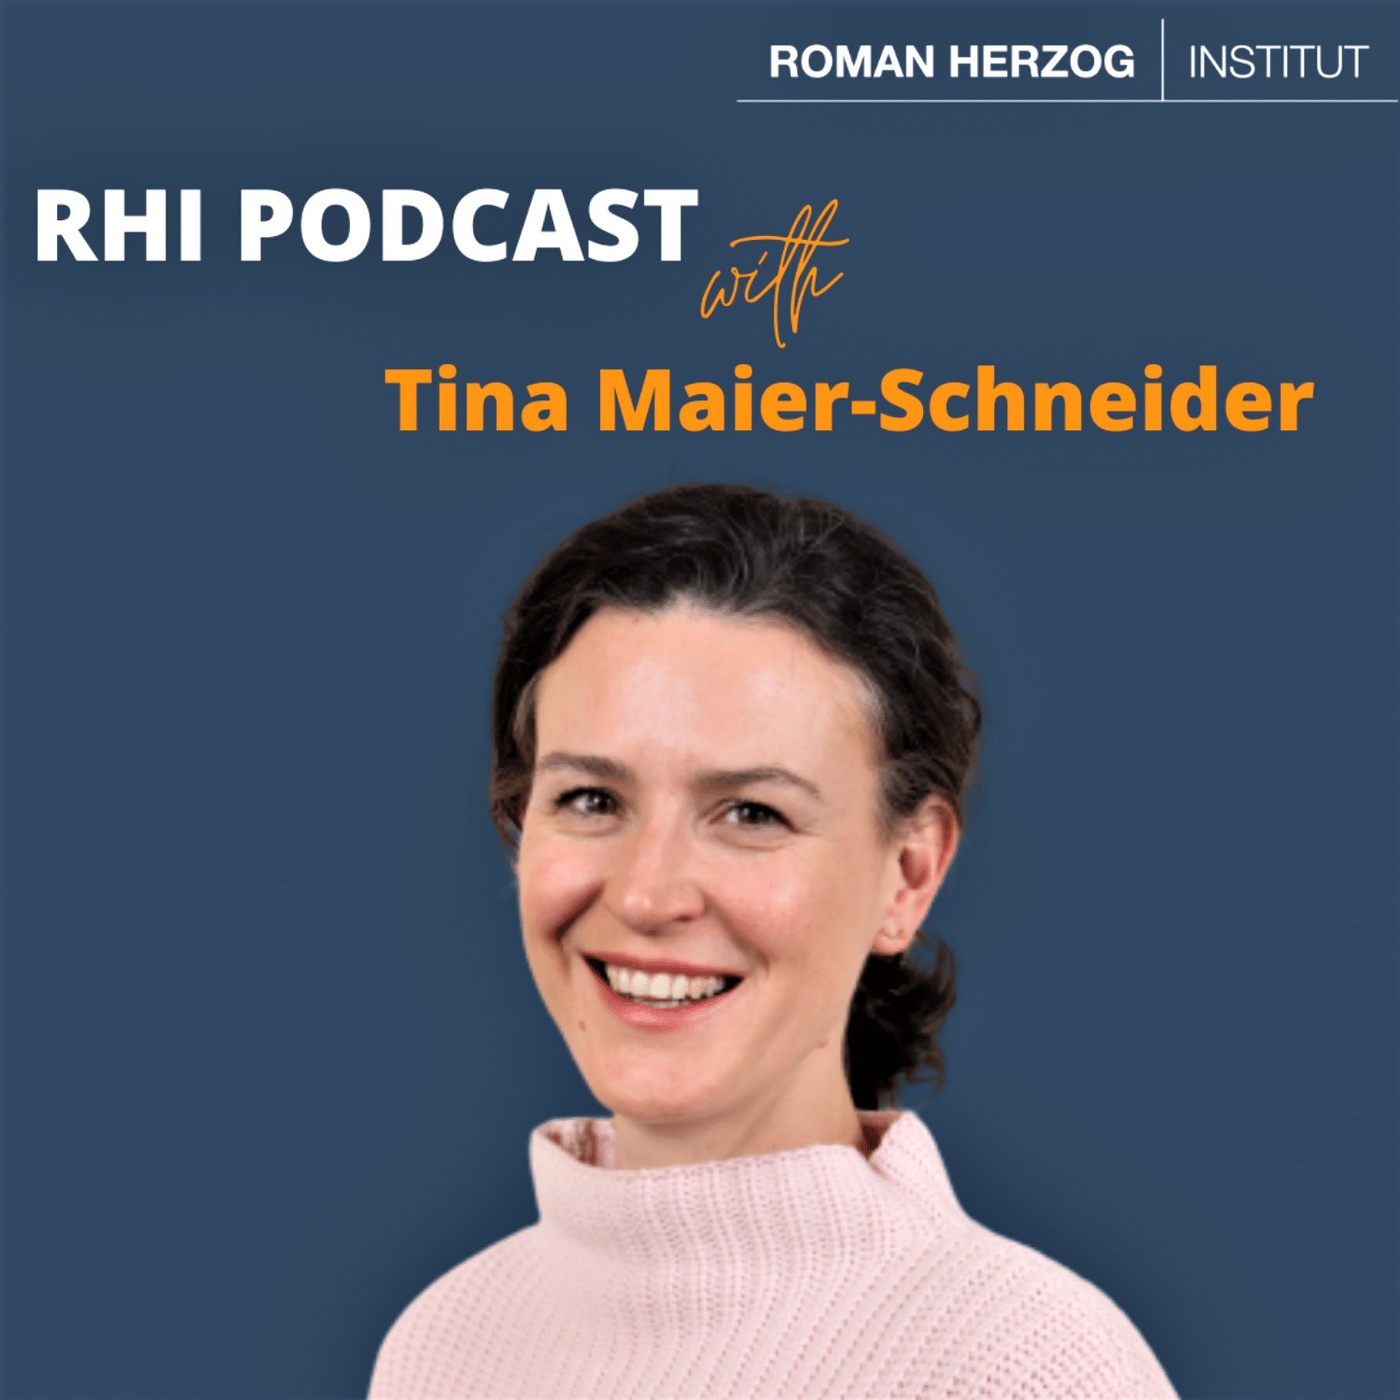 RHI Podcast with Tina Maier-Schneider